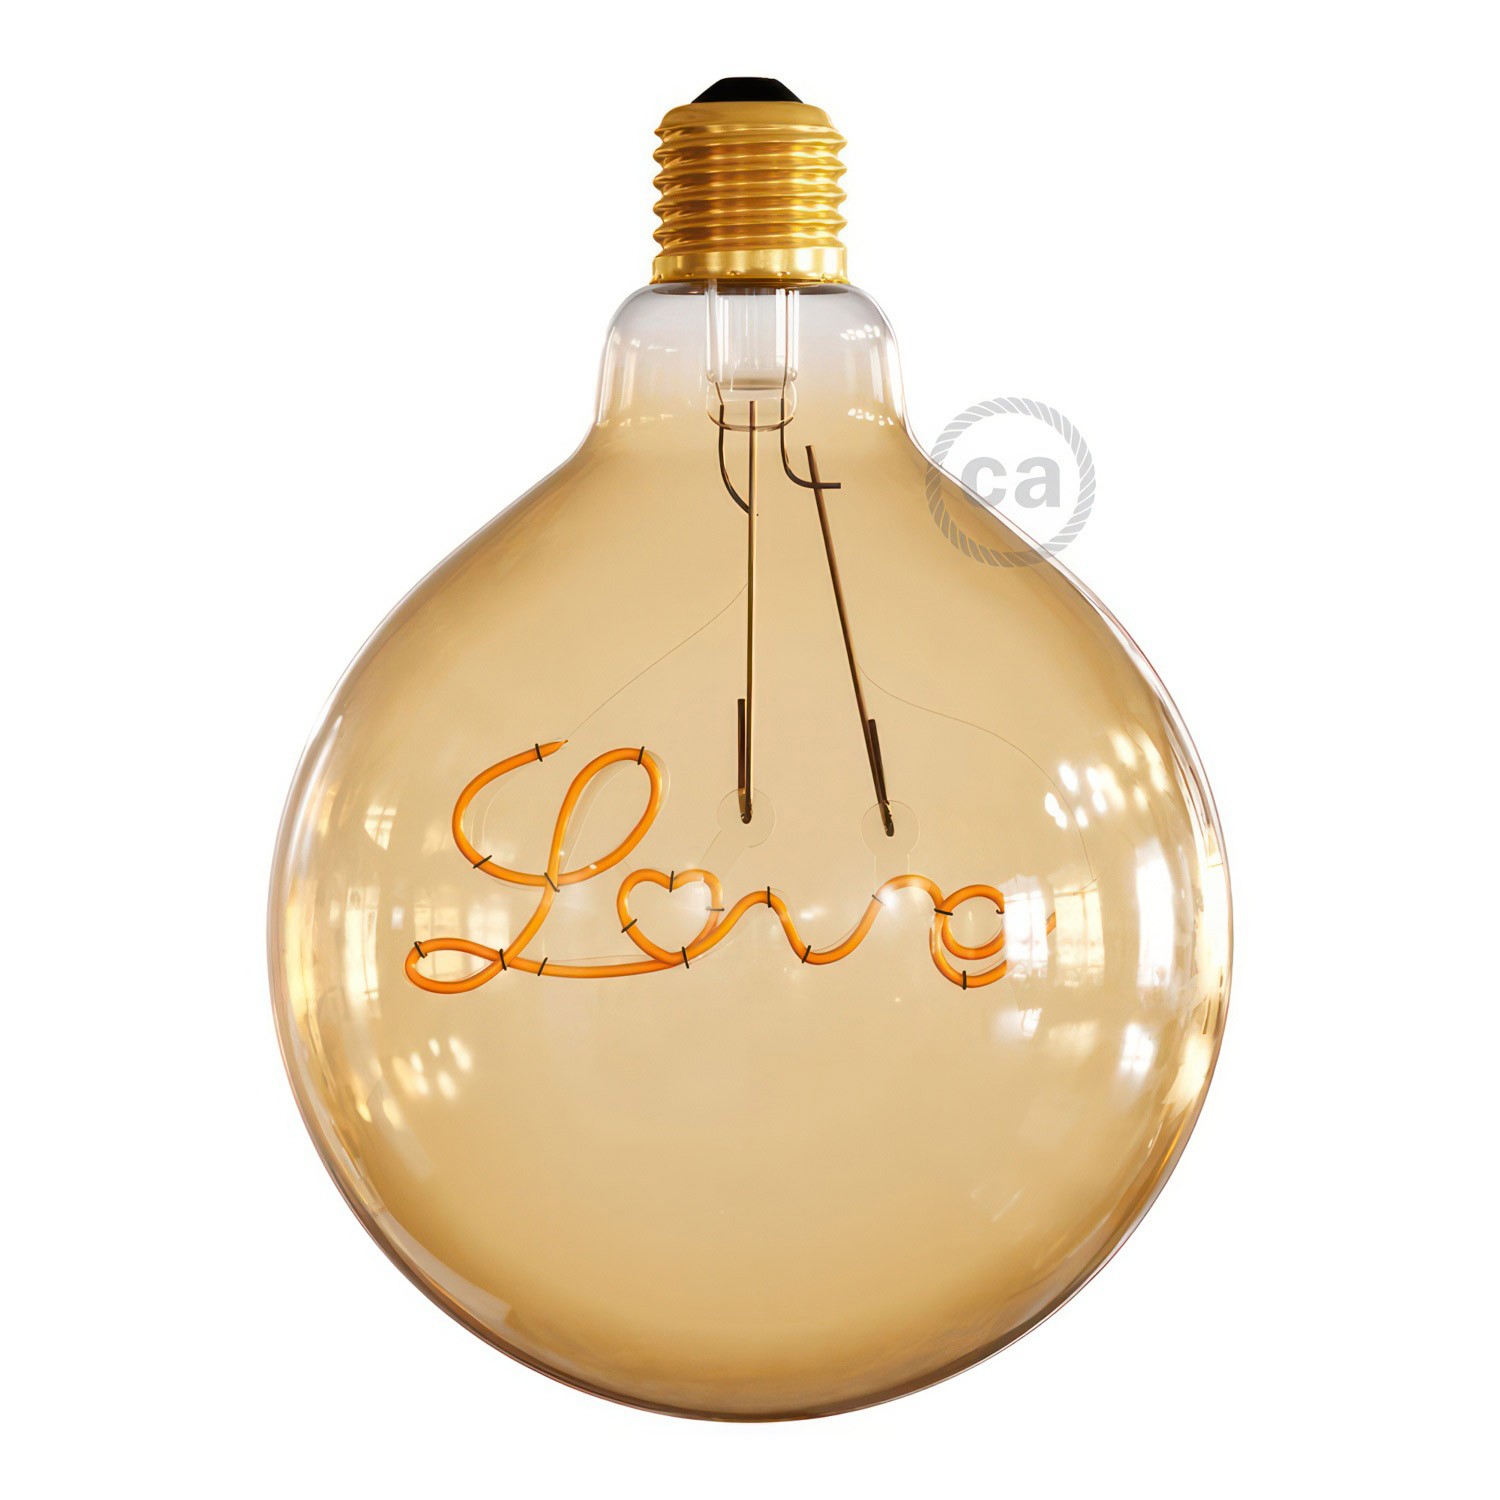 Ampoule globe E27 à calotte dorée haute LED – La Quincaillerie moderne